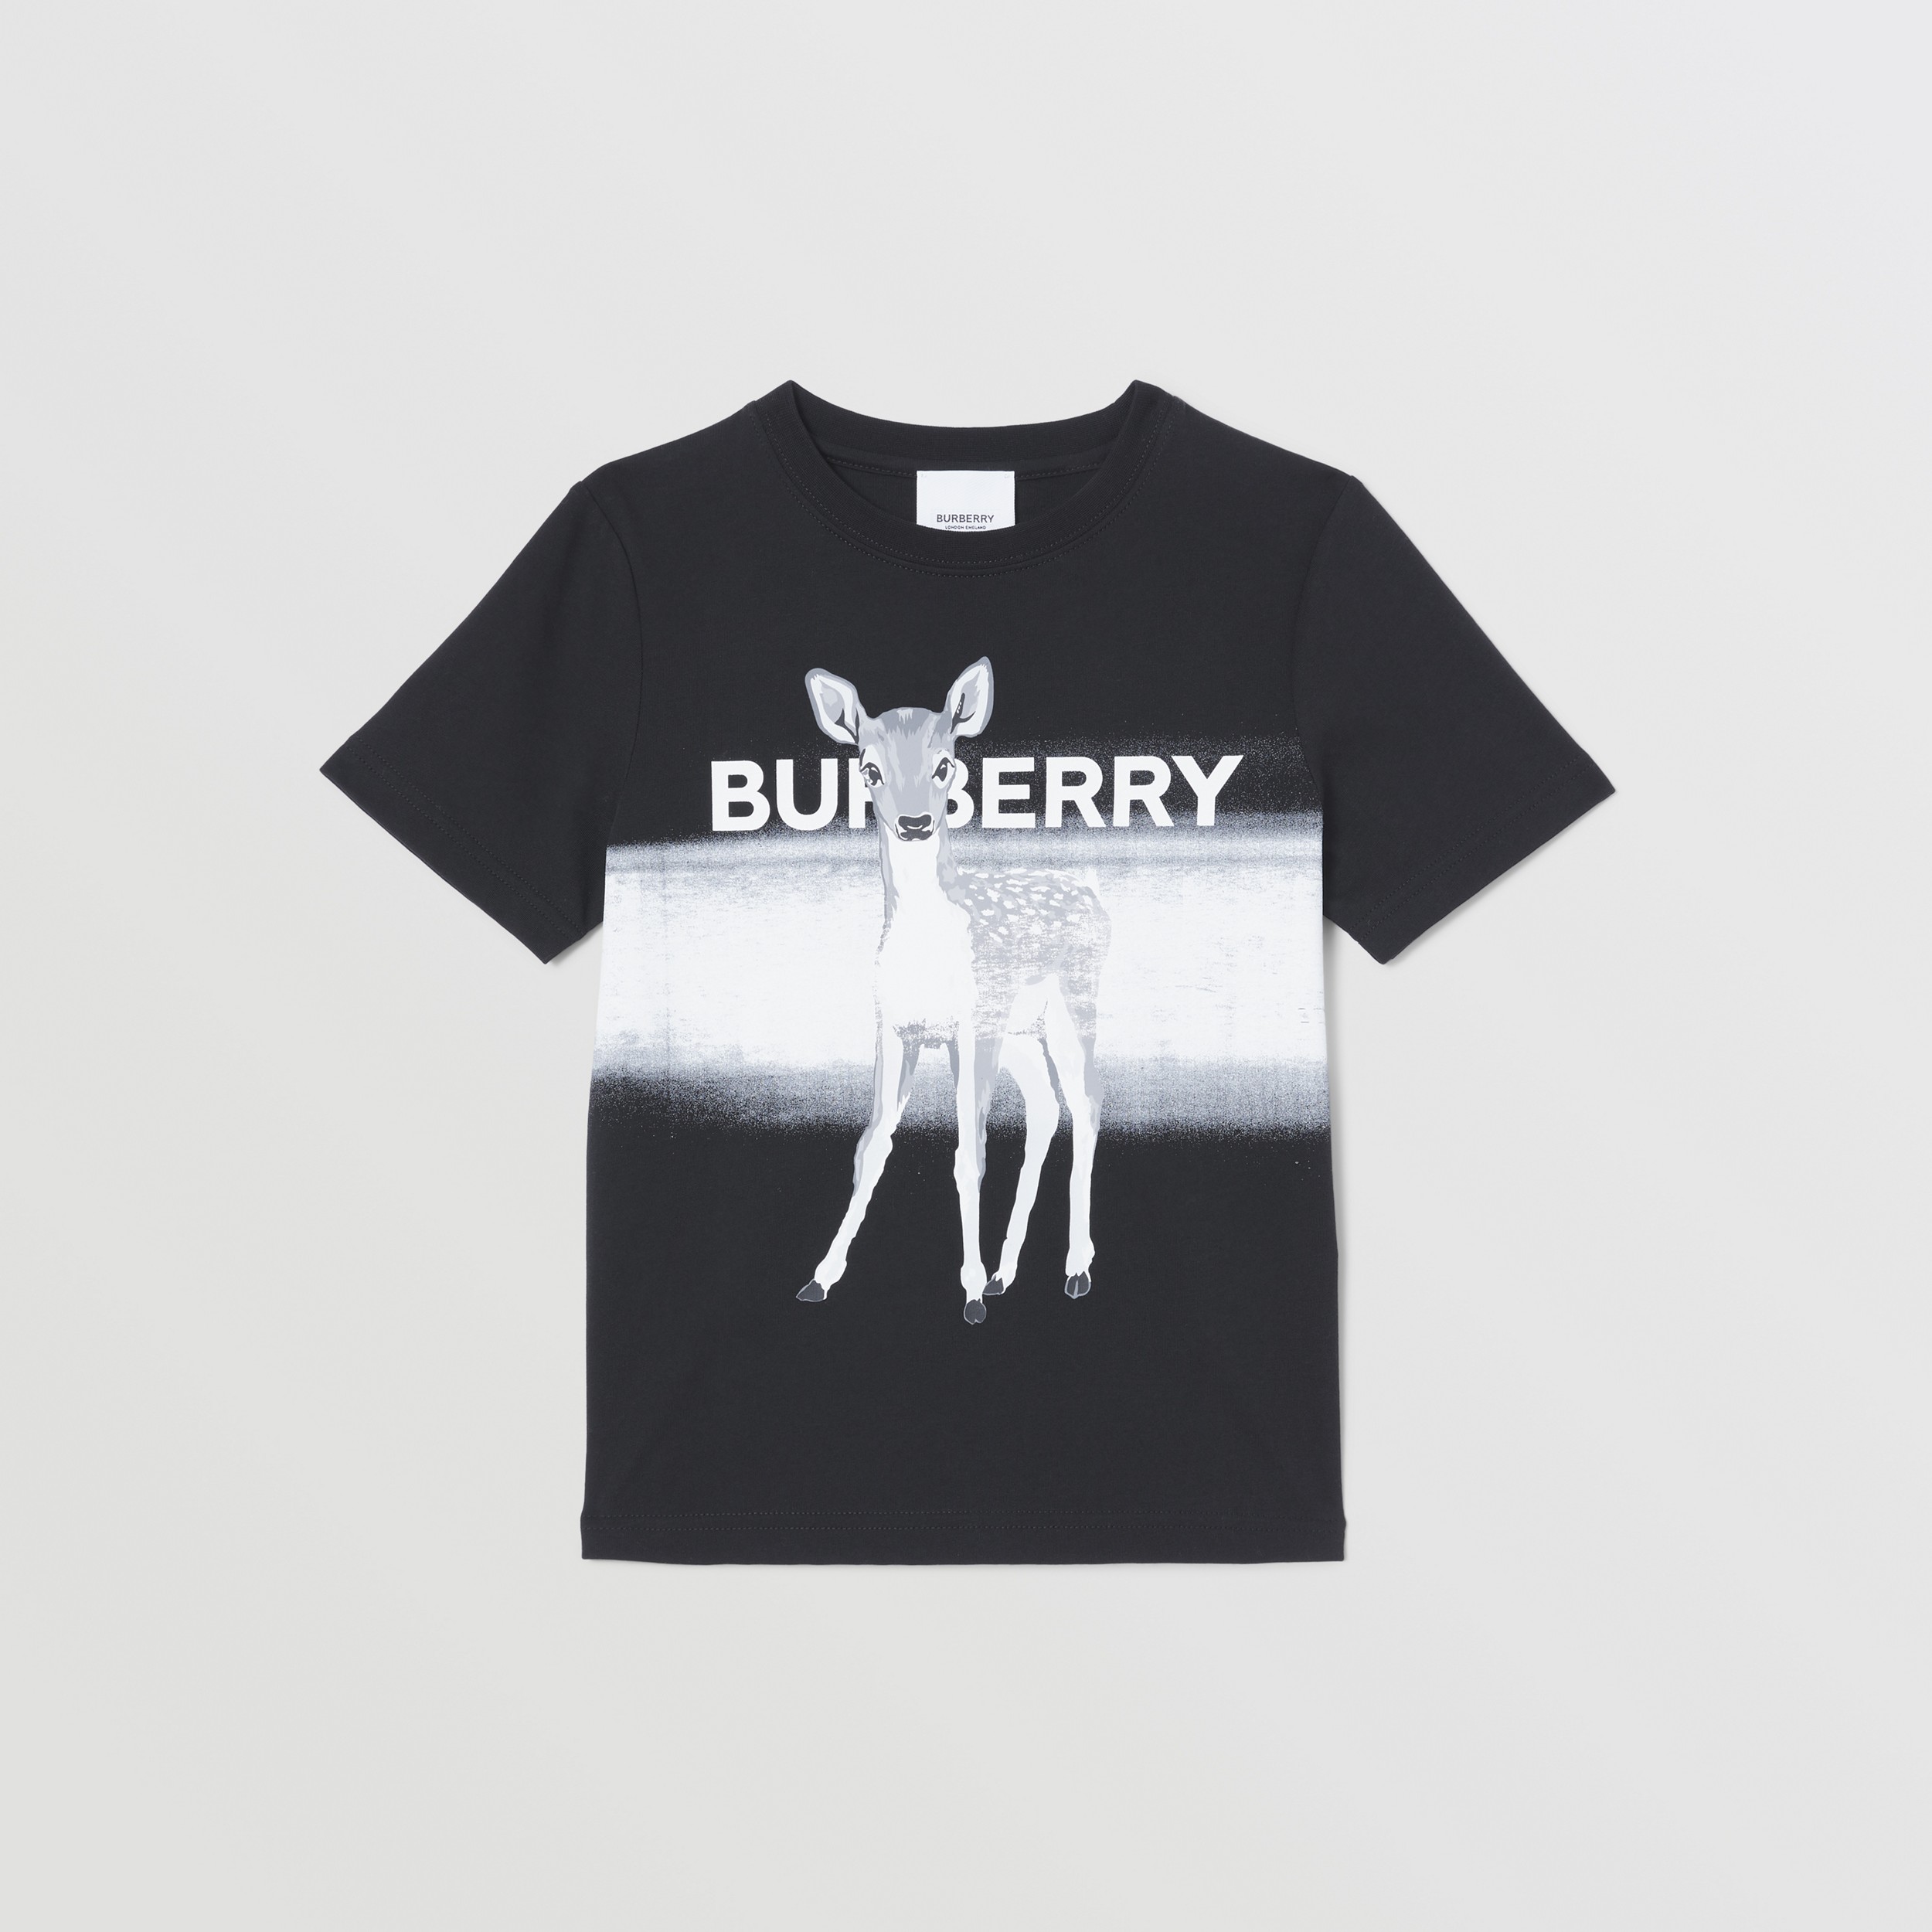 Хлопчатобумажная футболка с коллажным принтом (Черный) | Официальный сайт Burberry® - 1